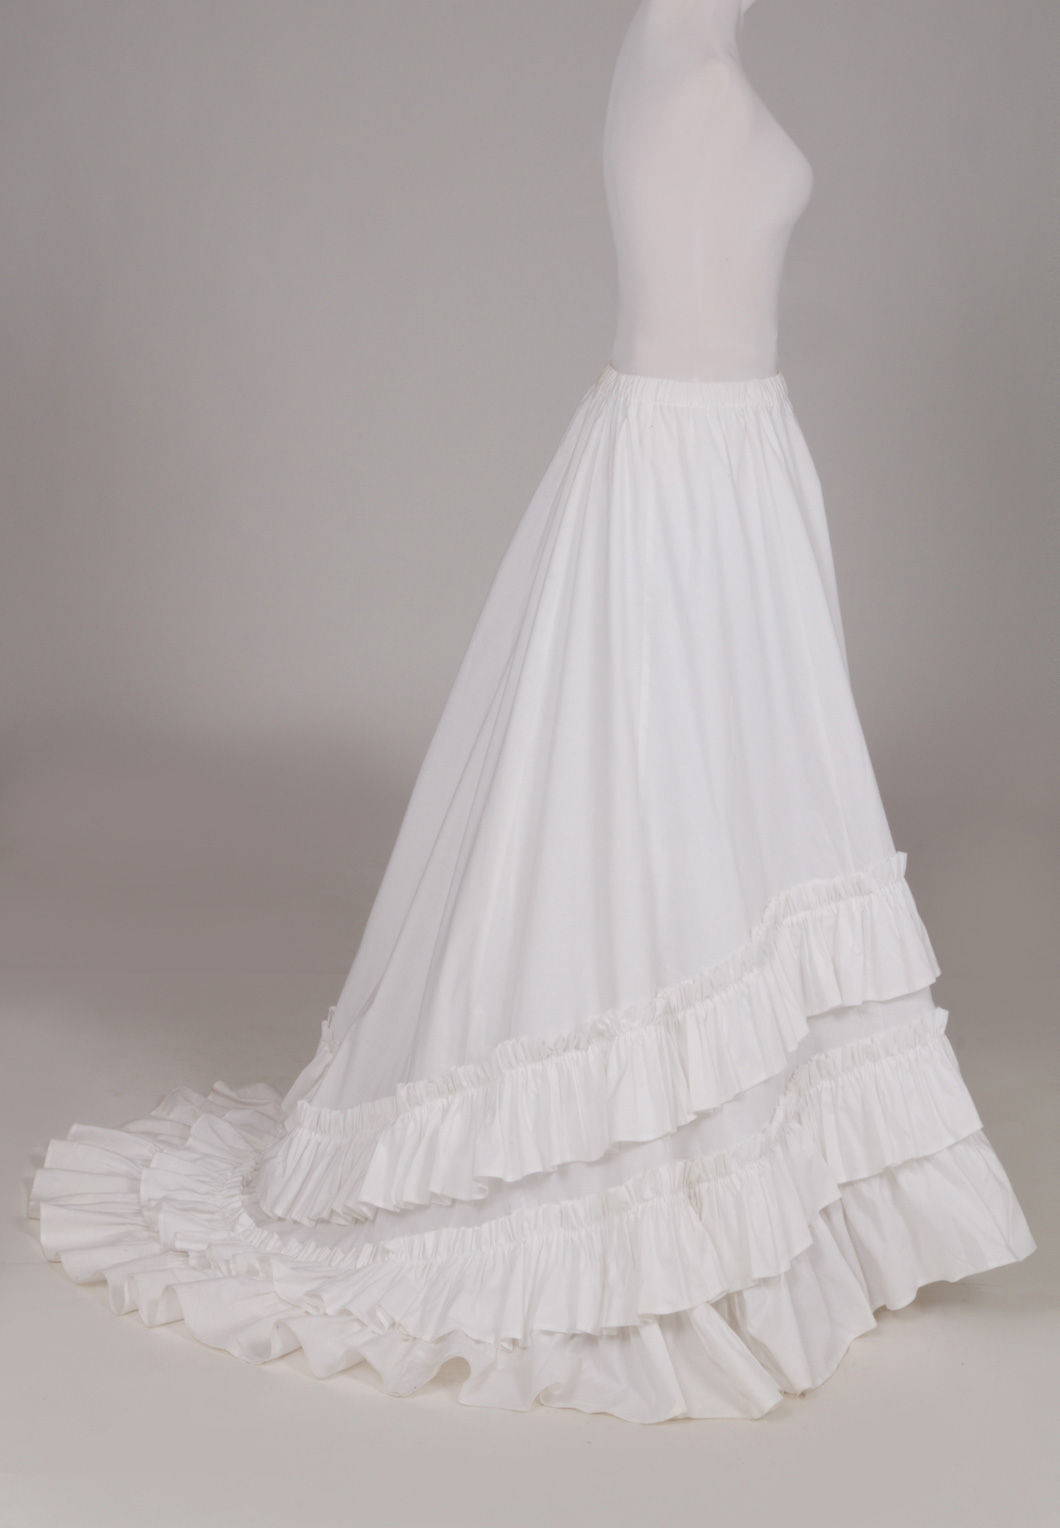 Victorian Ruffled Skirt